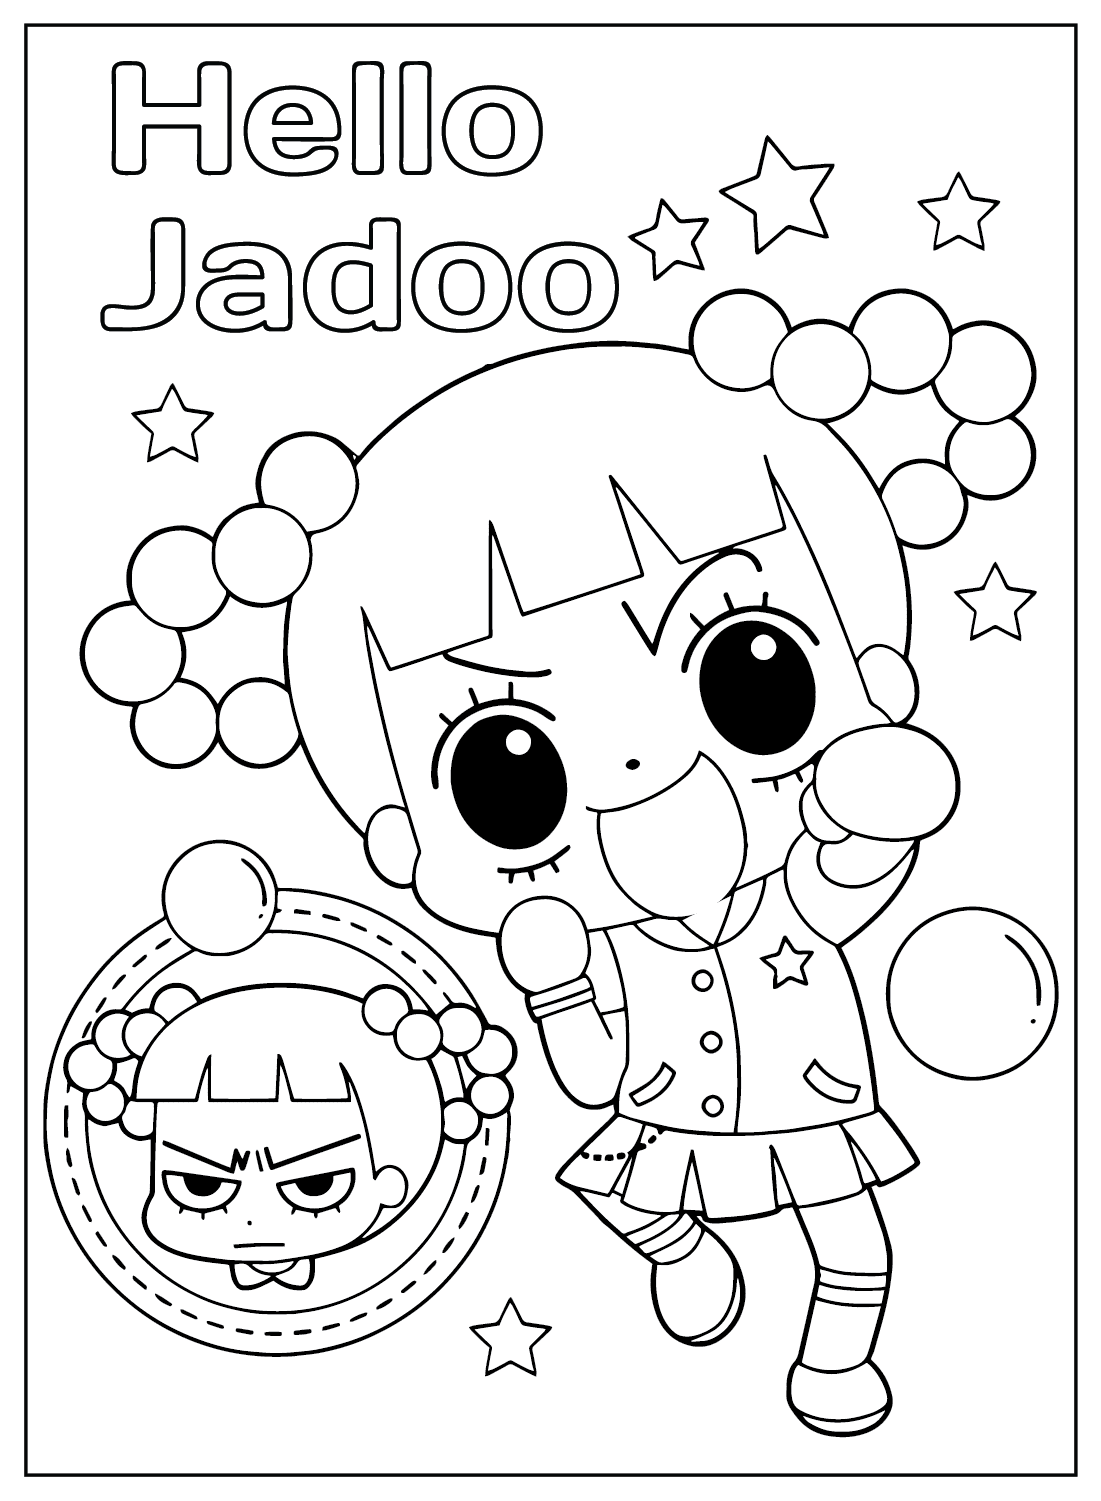 صفحة تلوين Hello Jadoo مجانية من Hello Jadoo